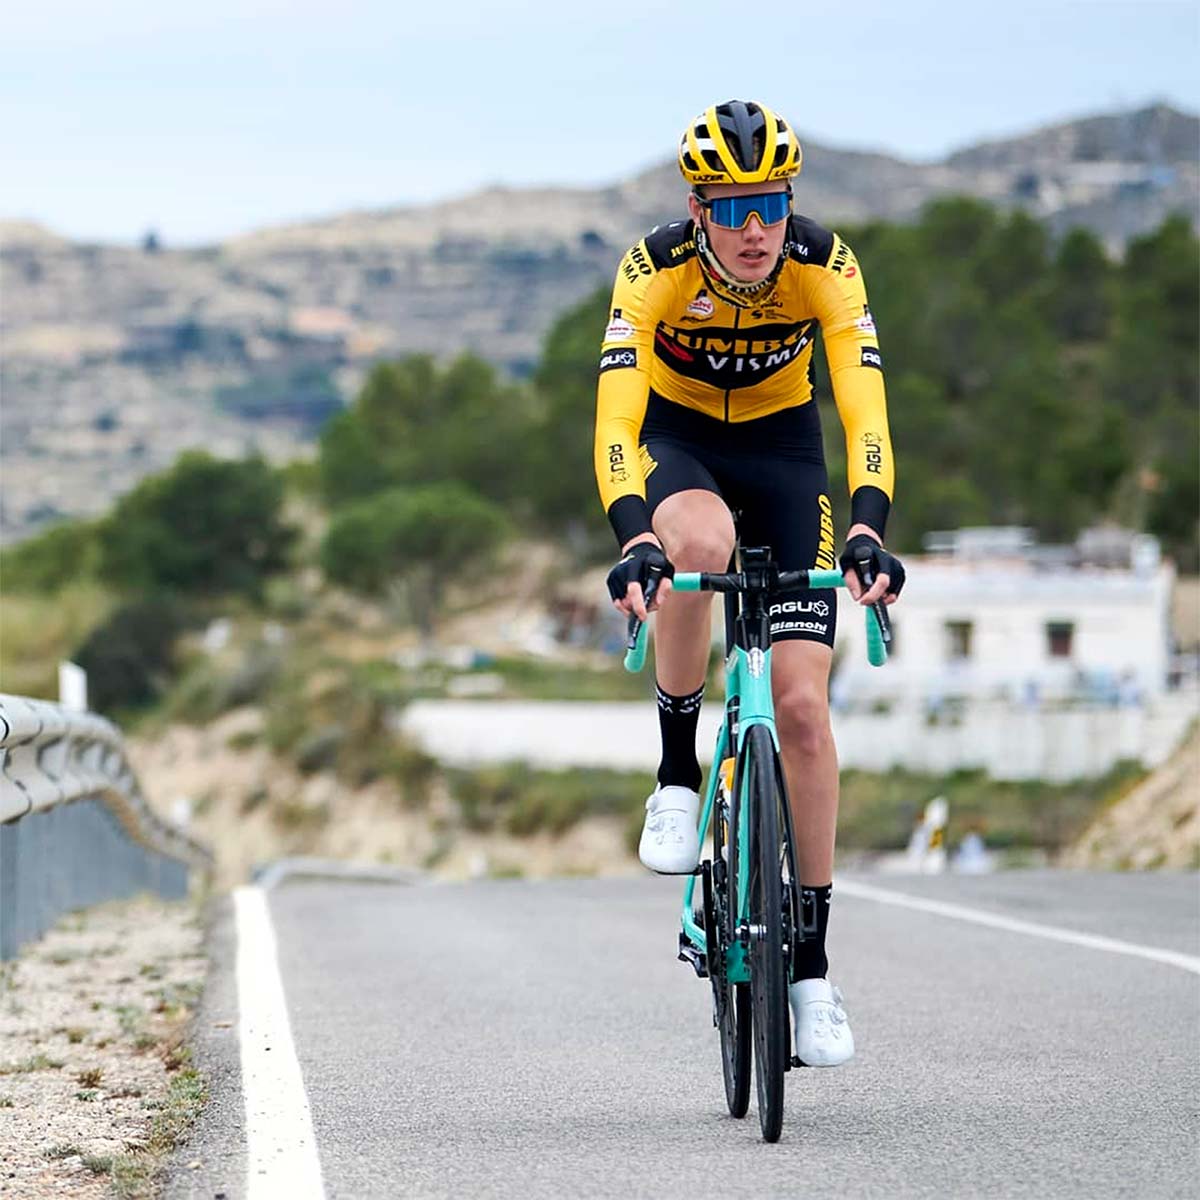 El ciclista Gijs Leemreize se amputa un dedo tras sufrir una caída en la primera etapa de la Vuelta a Burgos